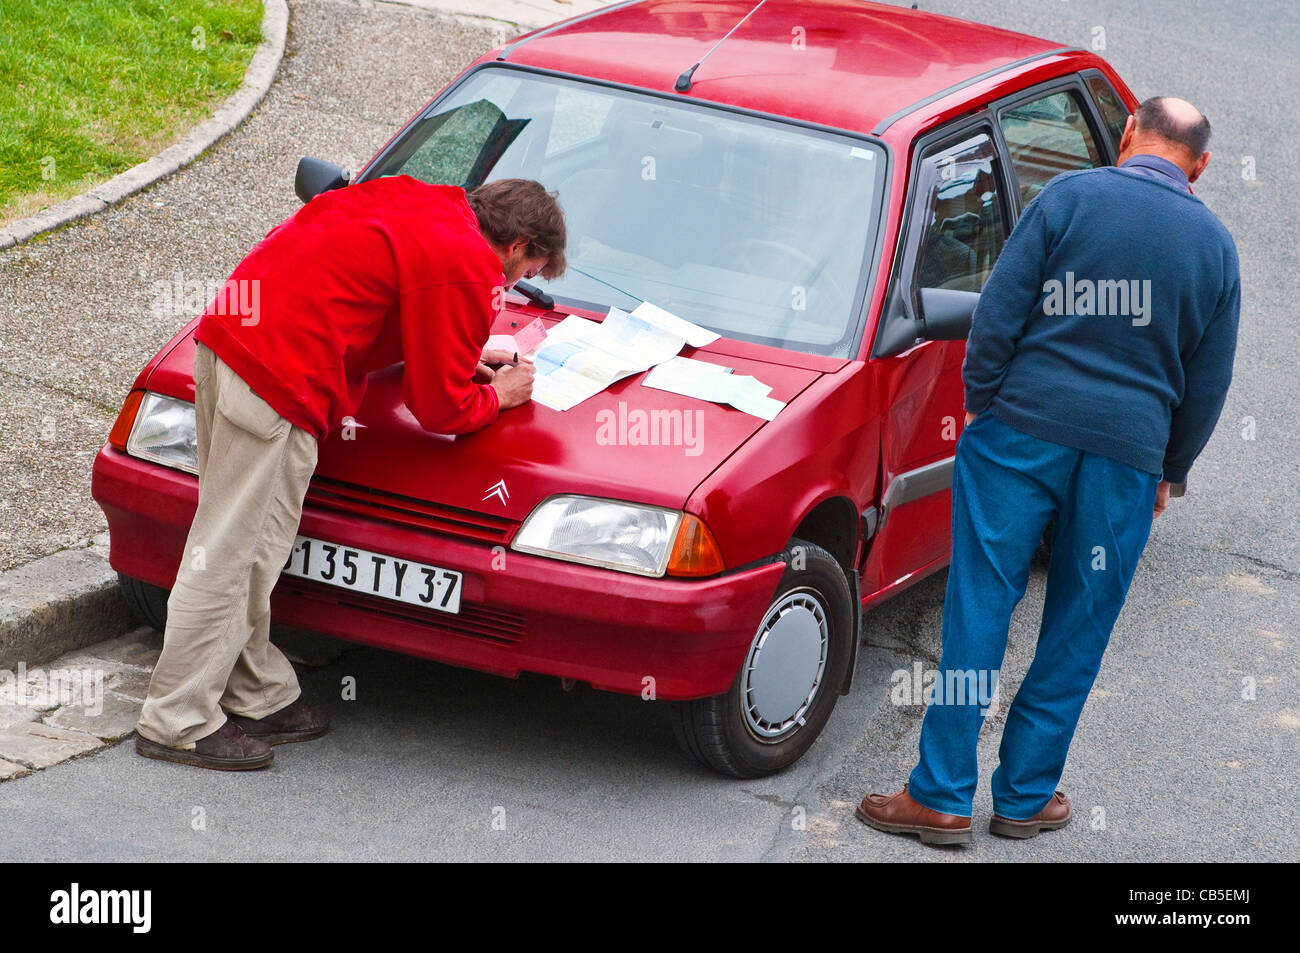 Autofahrer, die Kfz-Versicherung ausfüllen Antragsformulare - Frankreich. Stockfoto